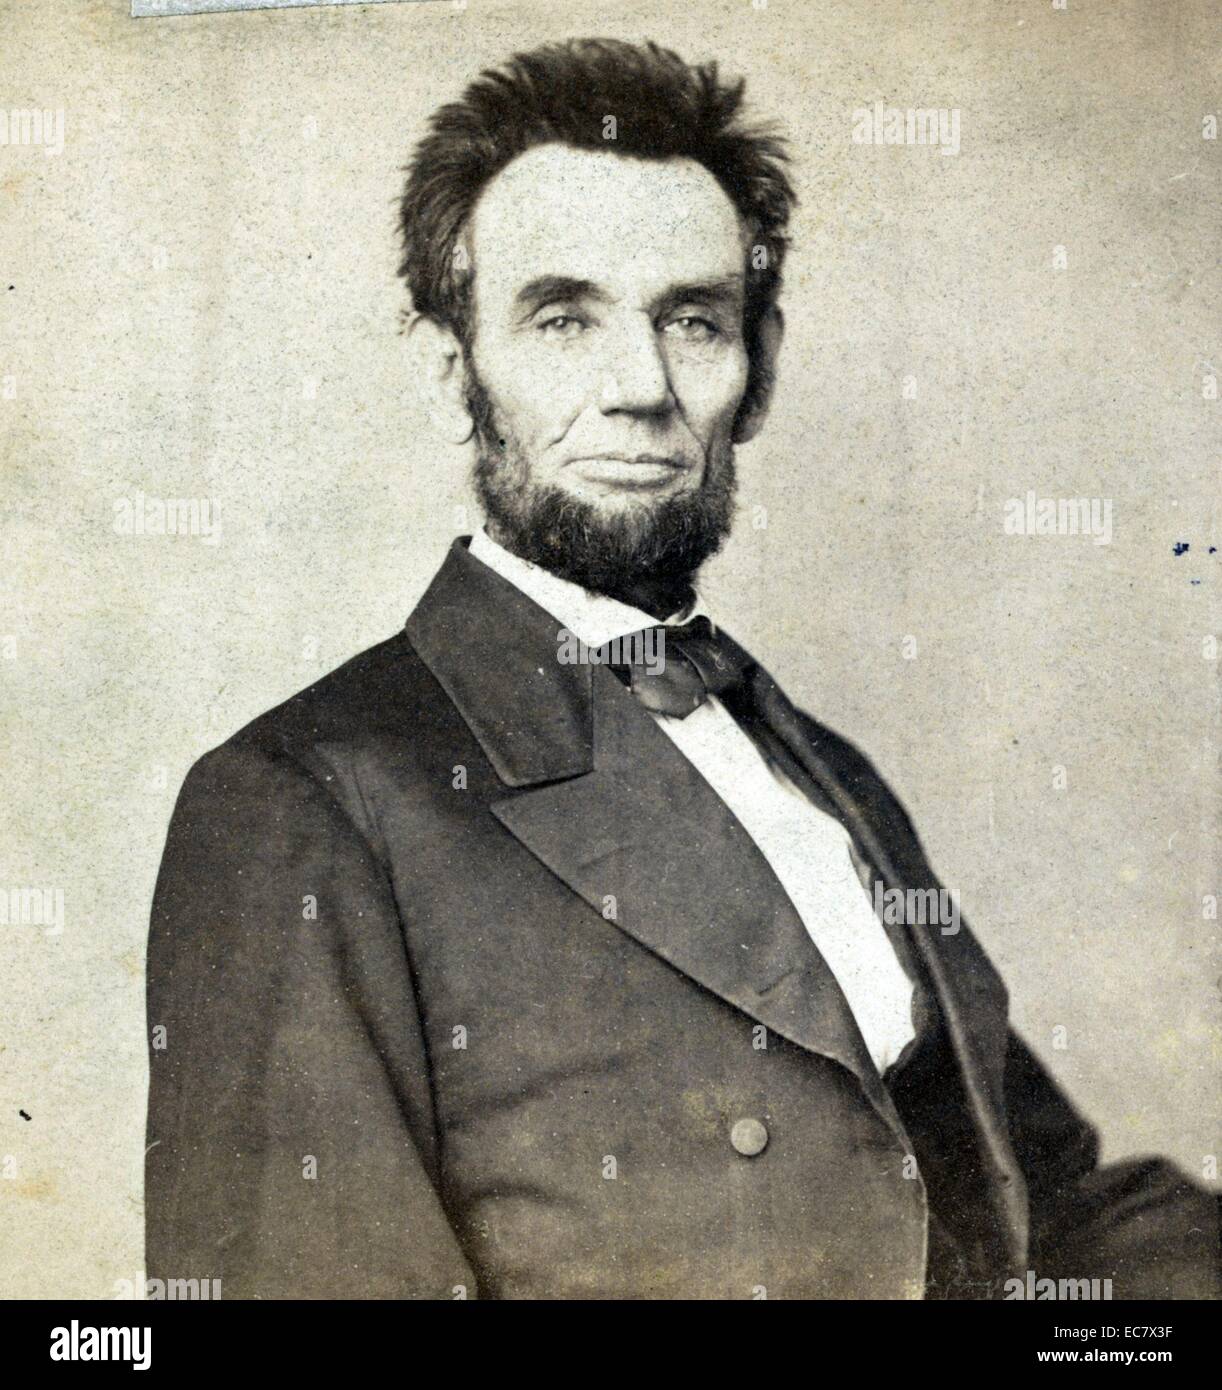 Abraham Lincoln, Präsident der Vereinigten Staaten. Die kurzen Haarschnitt war vielleicht von Lincoln's Friseur vorgeschlagen, die Aufnahme seines Lebens Maske durch Clark Mills zu erleichtern. Lincoln wußte aus Erfahrung, wie lange Haare zu Gips festhalten konnte. Stockfoto